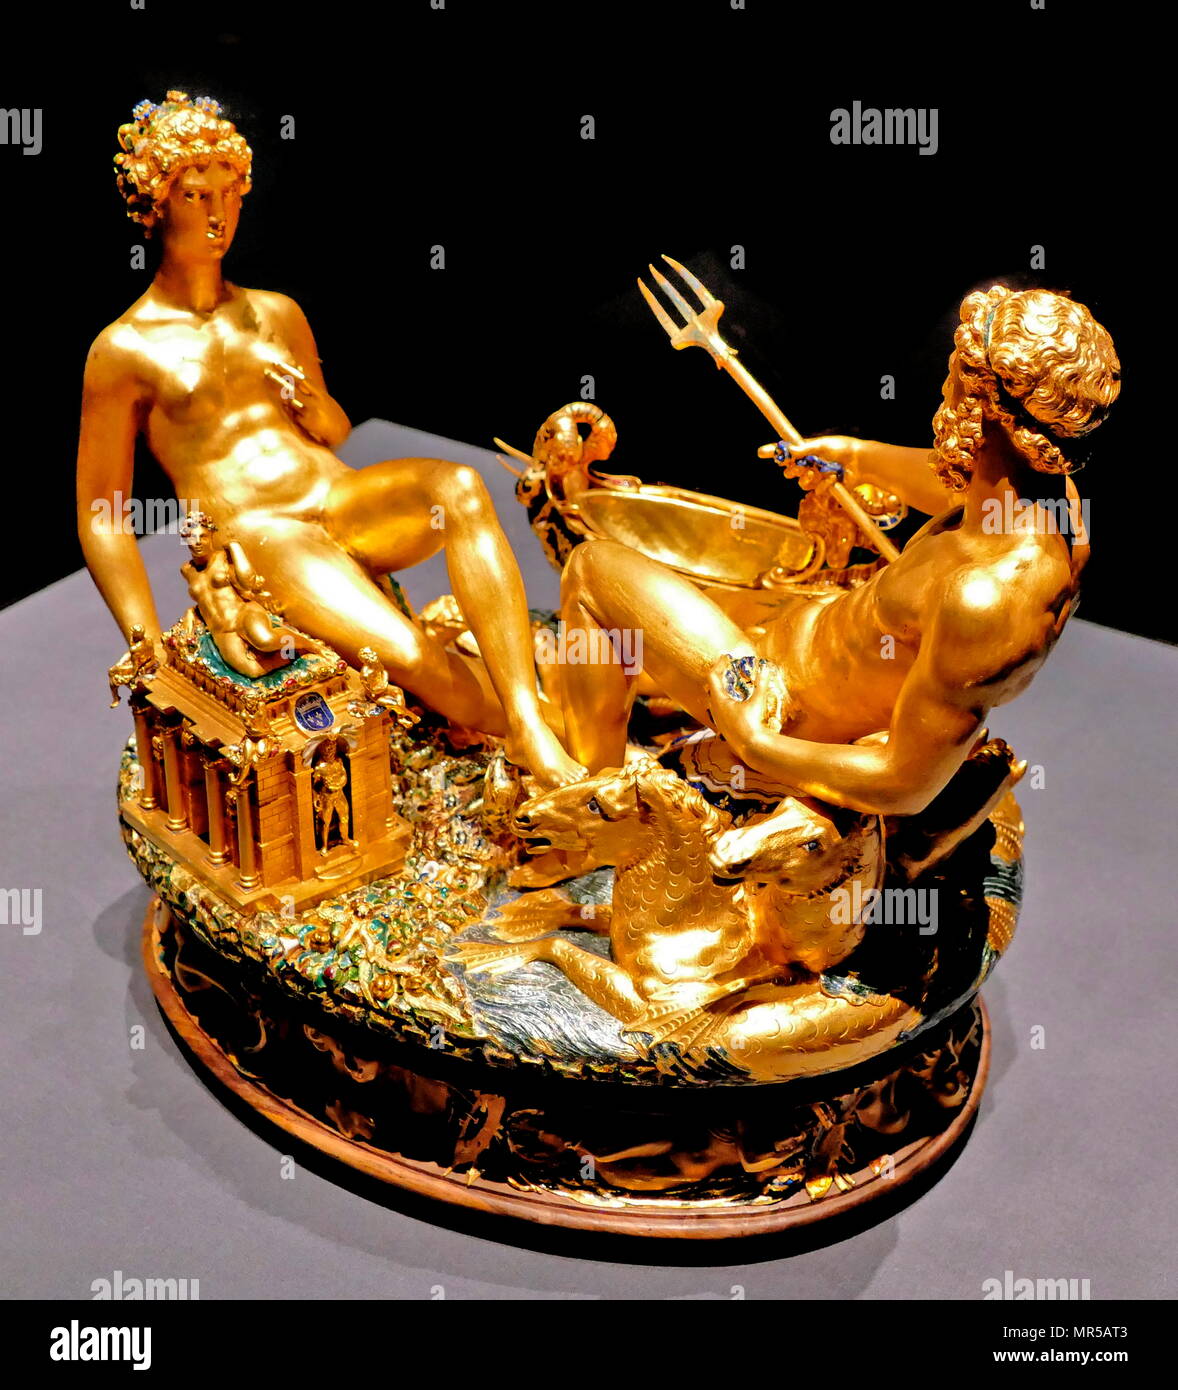 Fotografía del Cellini Salero (Saliera), una mesa de oro esmaltado  escultura, por Benvenuto Cellini. Fue completado en 1543 por Francisco I de  Francia, a partir de los modelos que había preparado muchos